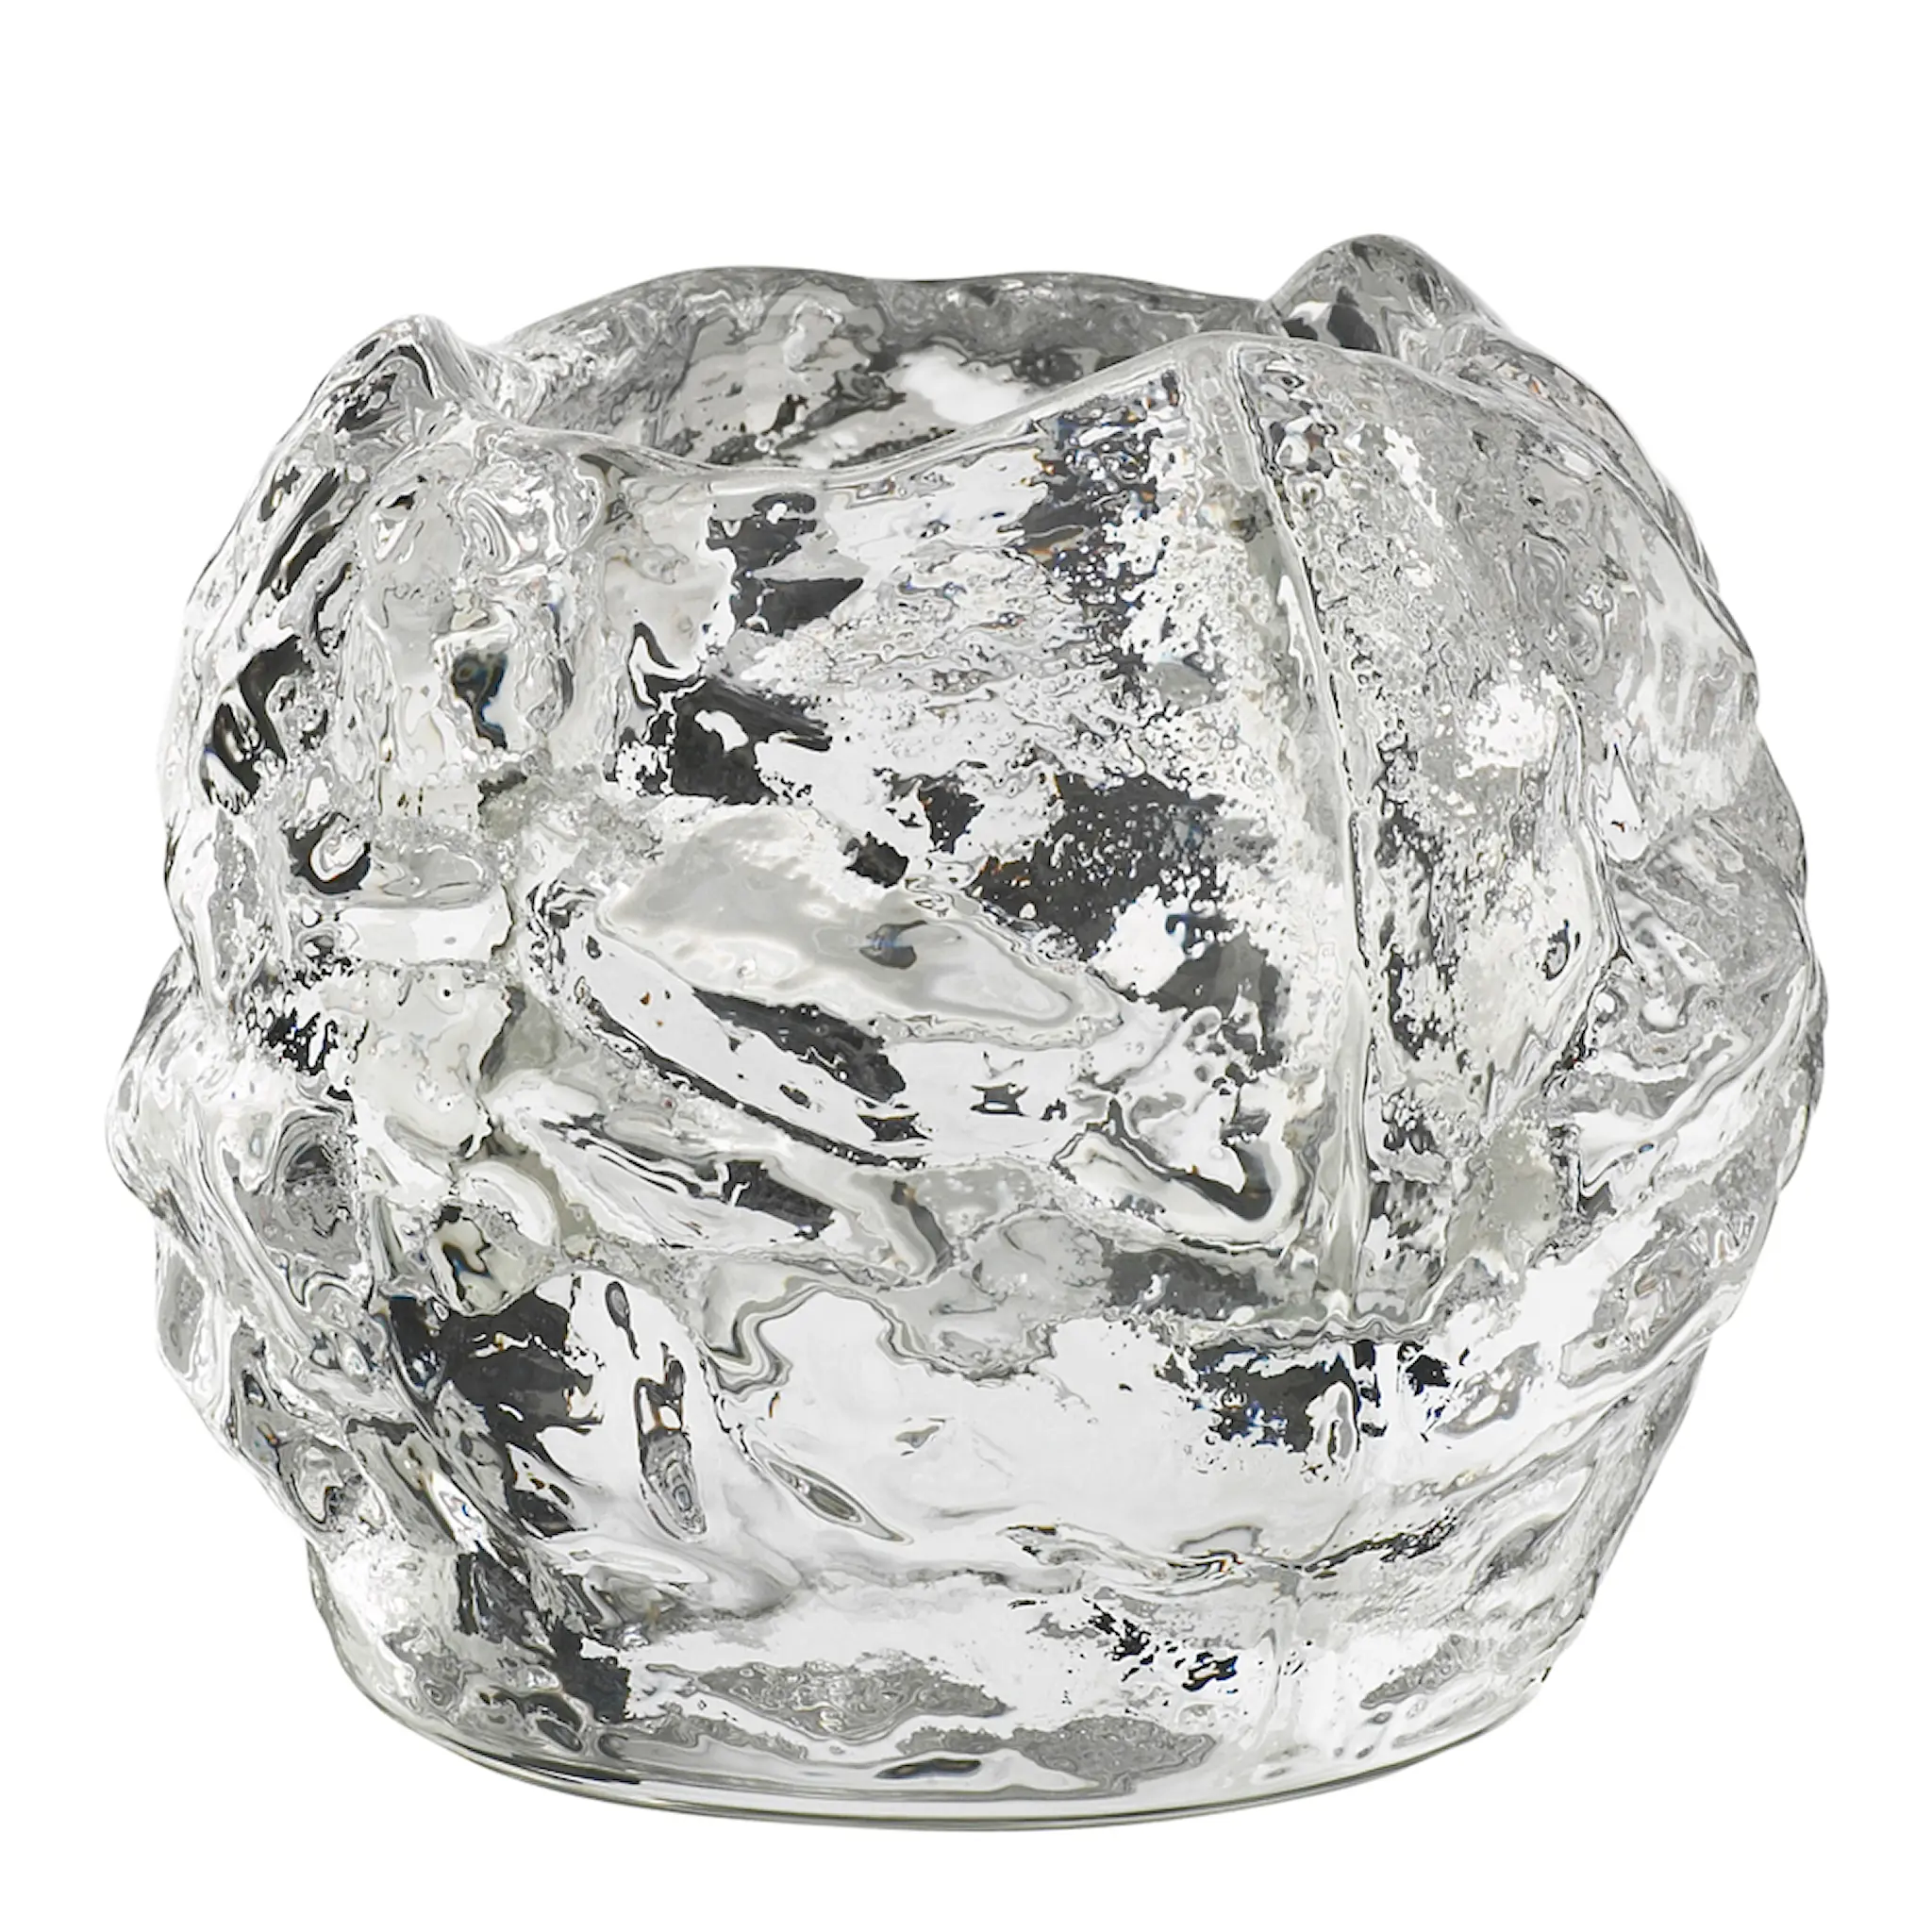 Kosta Boda Snowball votive lysestake 6 cm